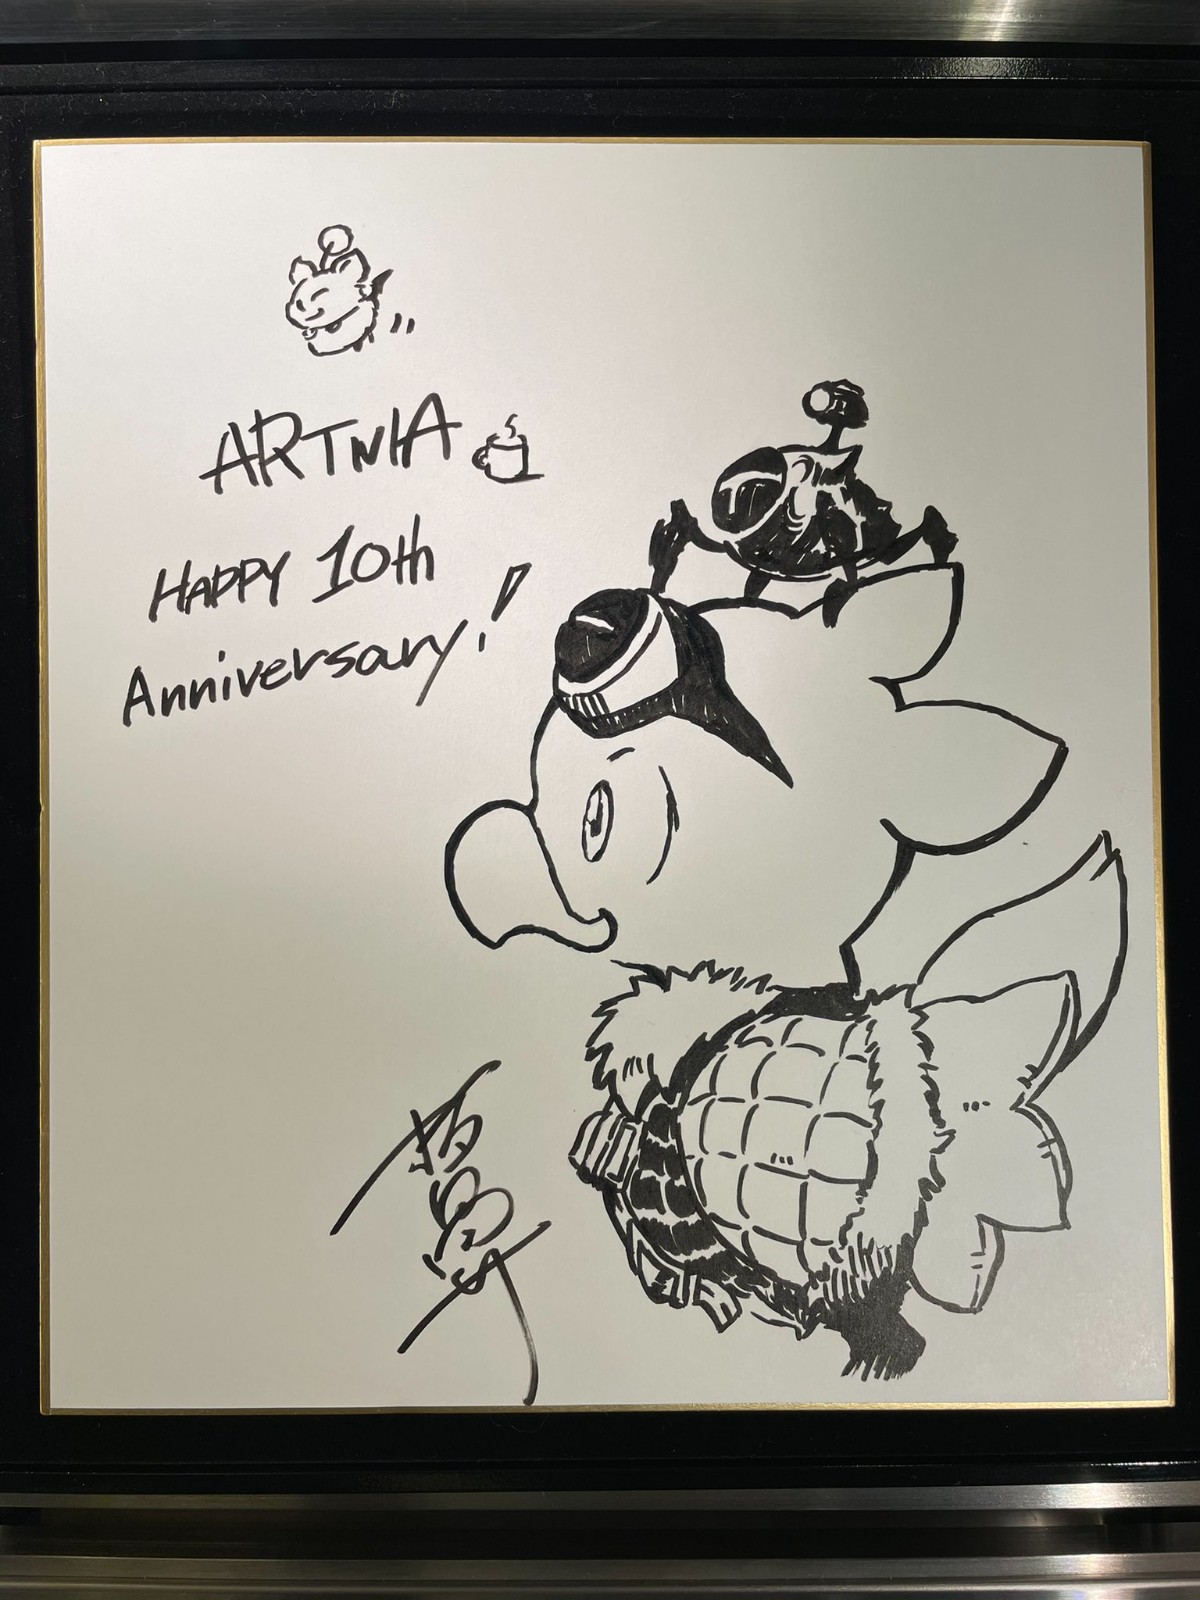 SE咖啡厅Artnia十周年店庆 野村哲也发布祝贺作品 二次世界 第4张